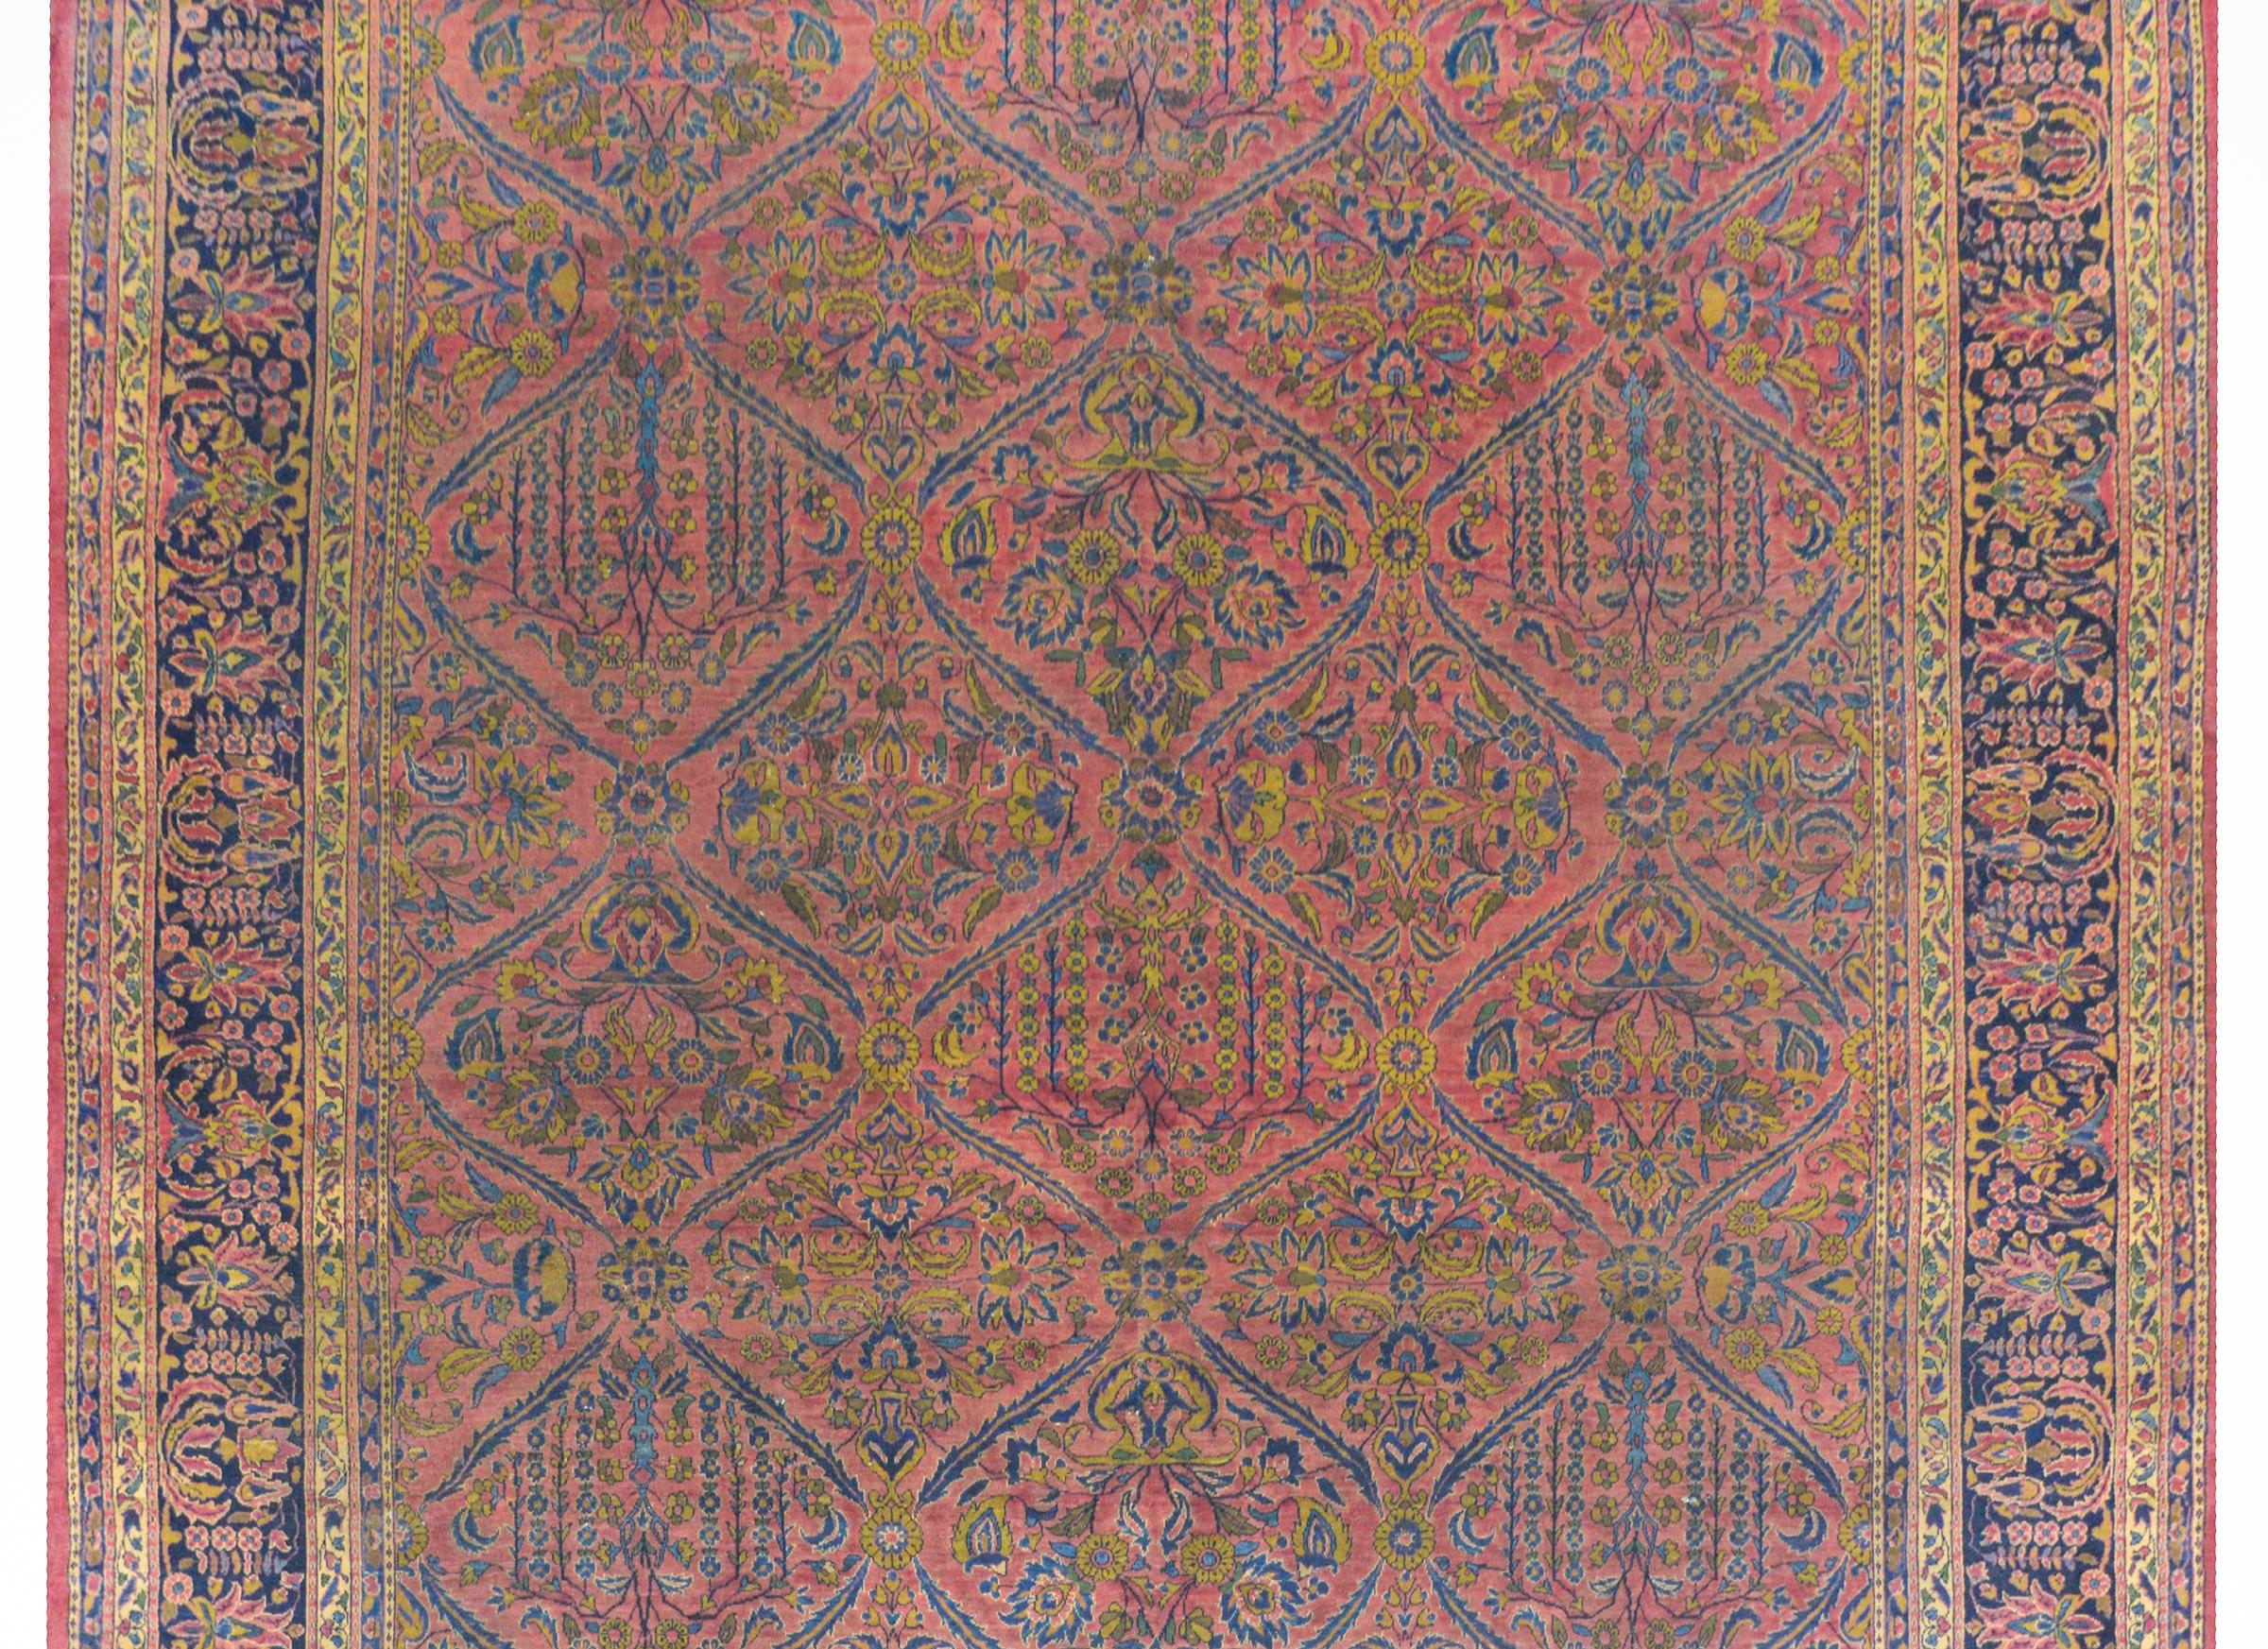 Ein hervorragender persischer Sarouk-Teppich aus dem frühen 20. Jahrhundert mit einem fantastischen Allover-Spaliermuster, das Trauerweiden und blühende Topfblumen und Reben enthält, die alle in hellem und dunklem Indigo und Gold auf einem